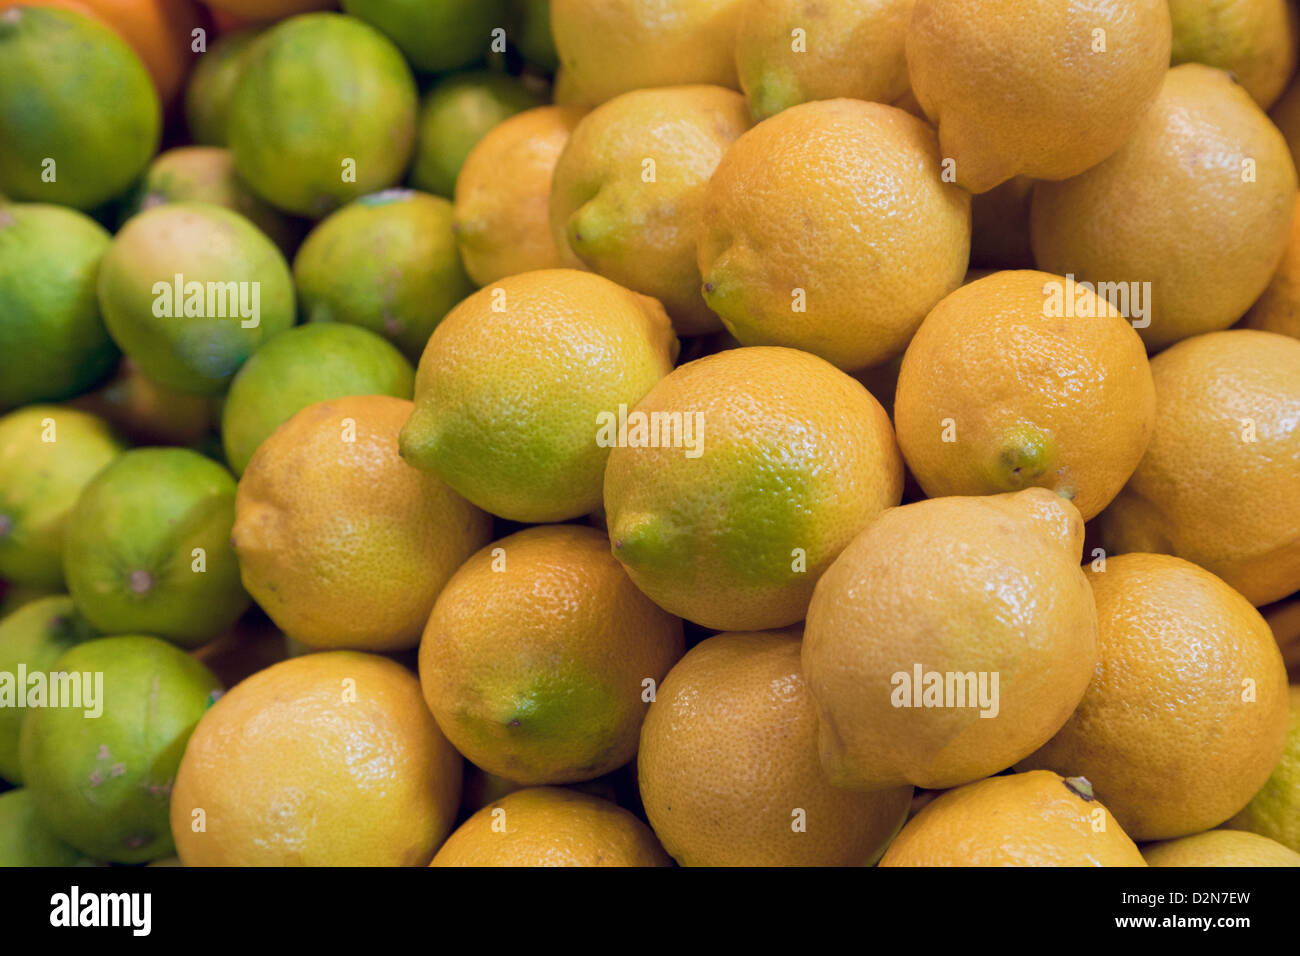 Citrons et limes, Rutaceae, agrumes prêts à être vendus sur le marché agricole Banque D'Images